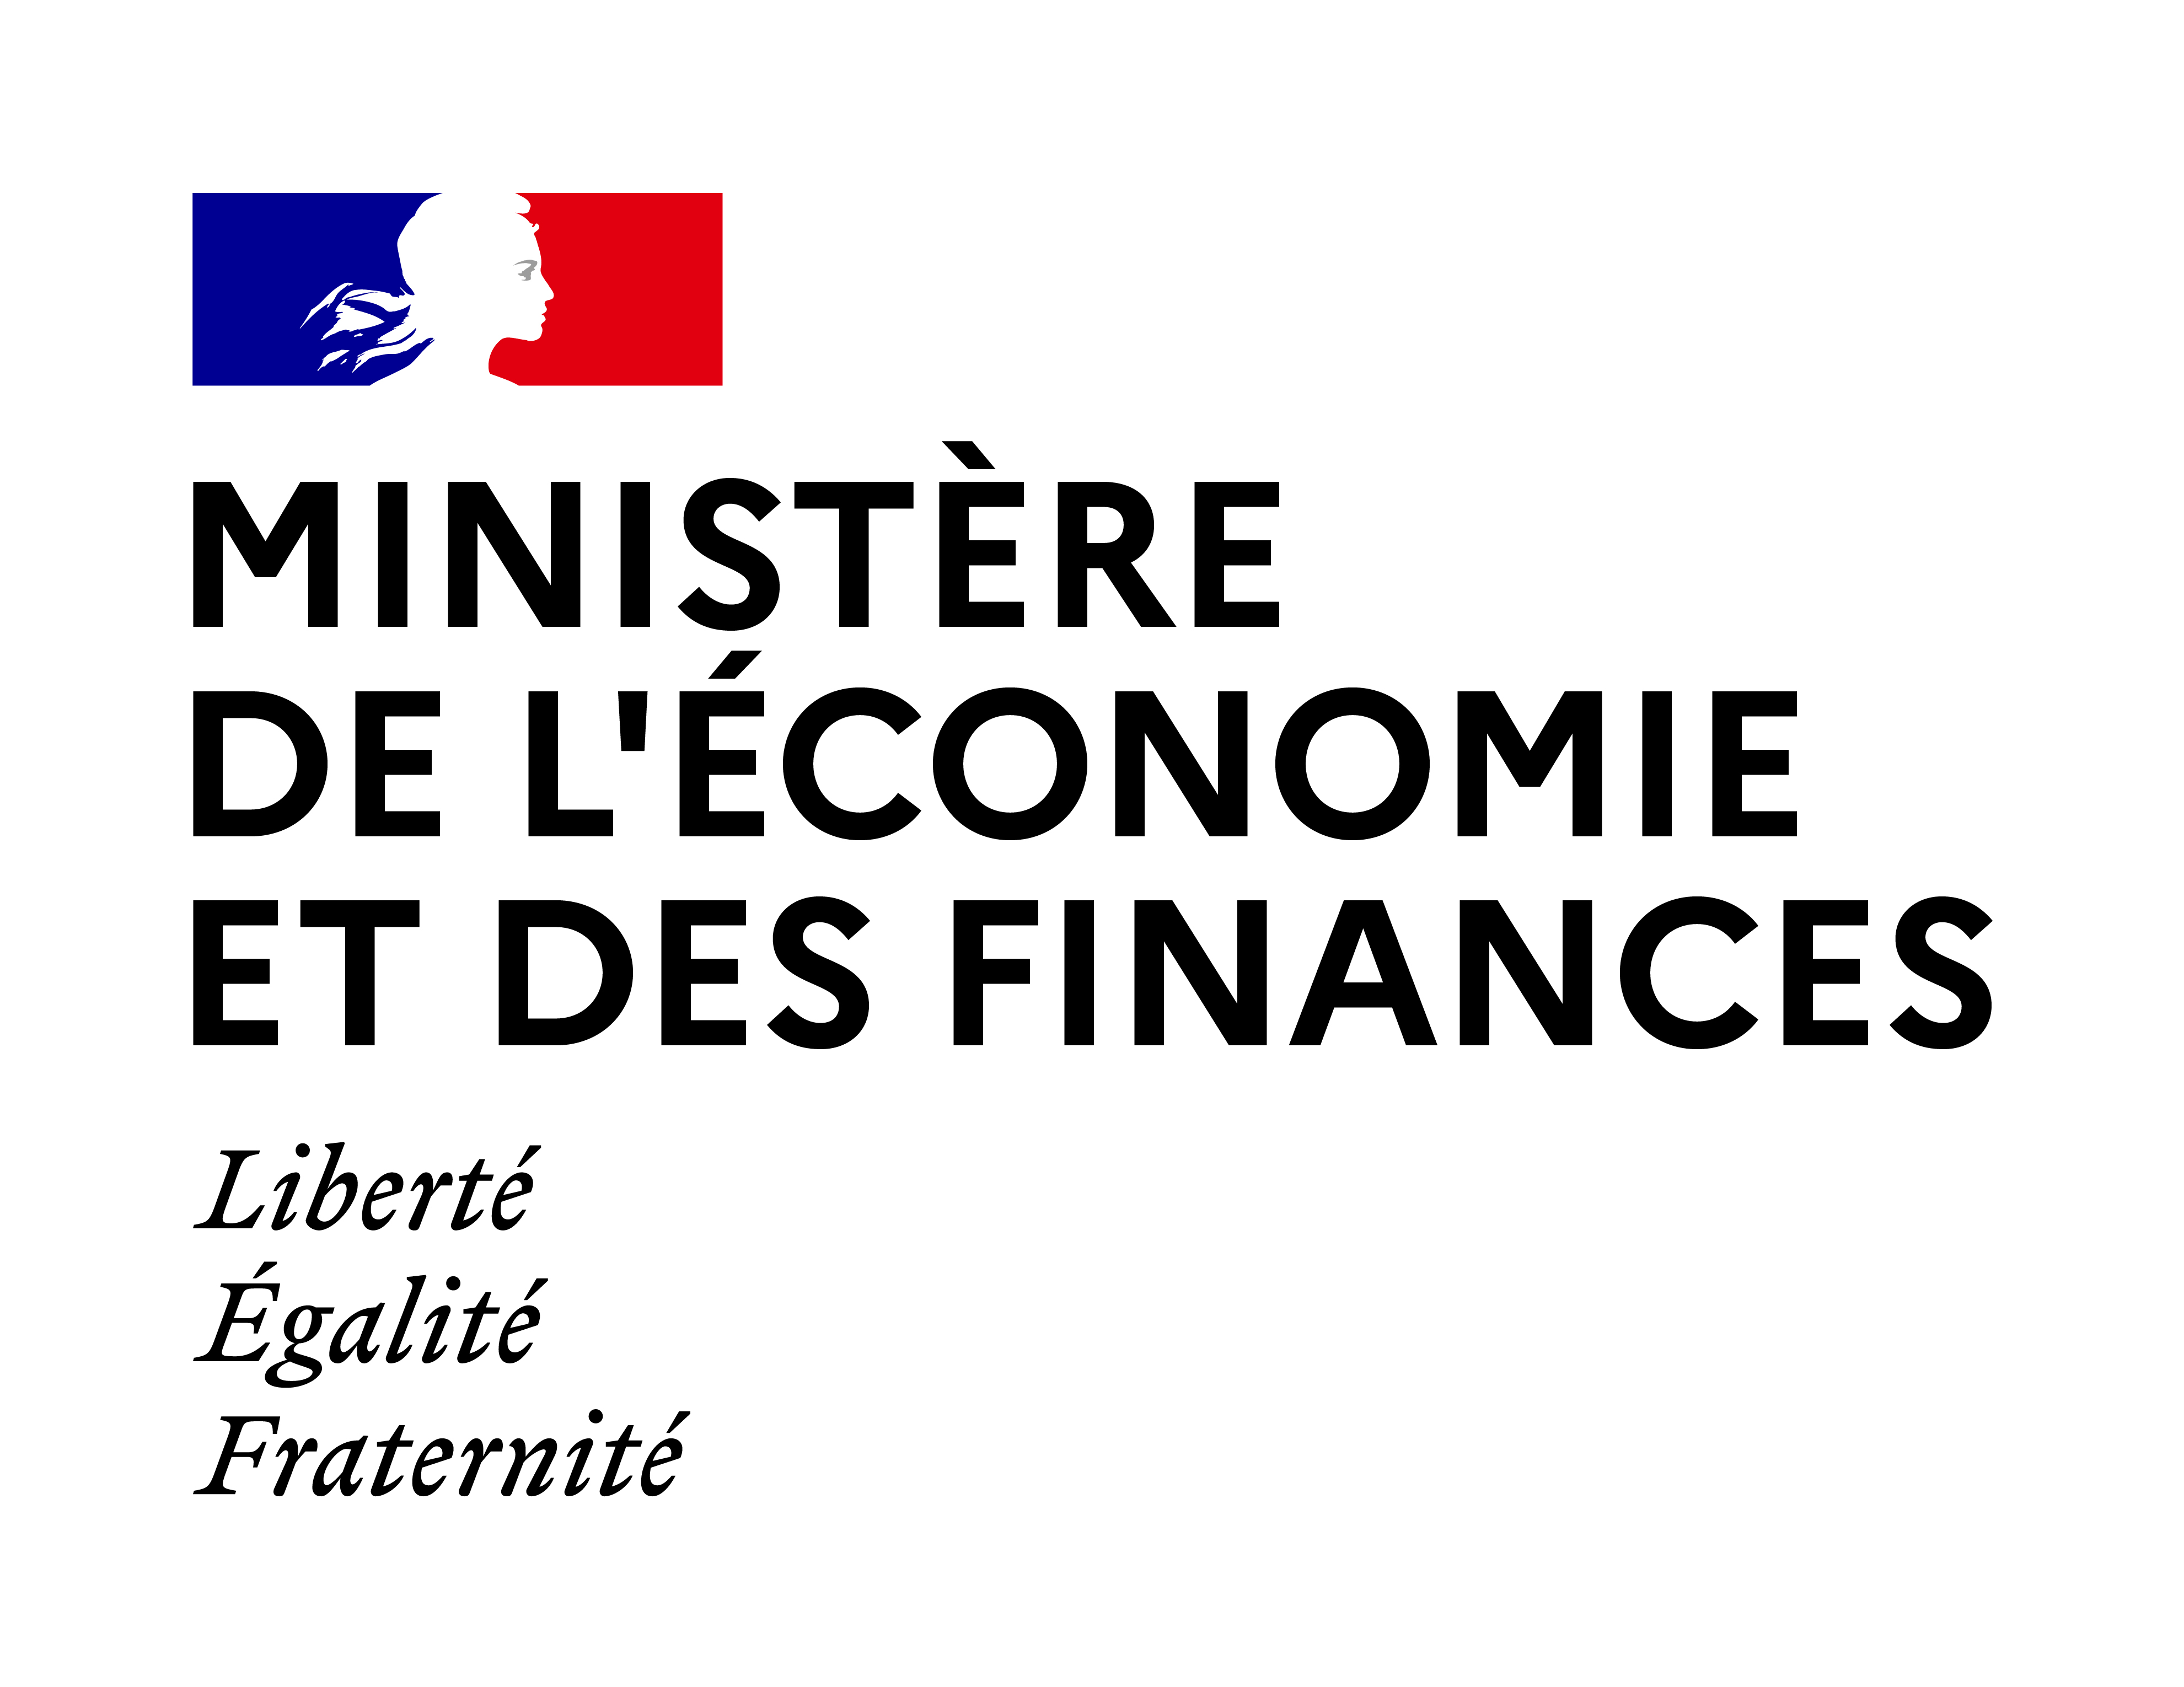 Ministère de l'Economie et des Finances – Direction générale des entreprises (Service des Biens à Double Usage)